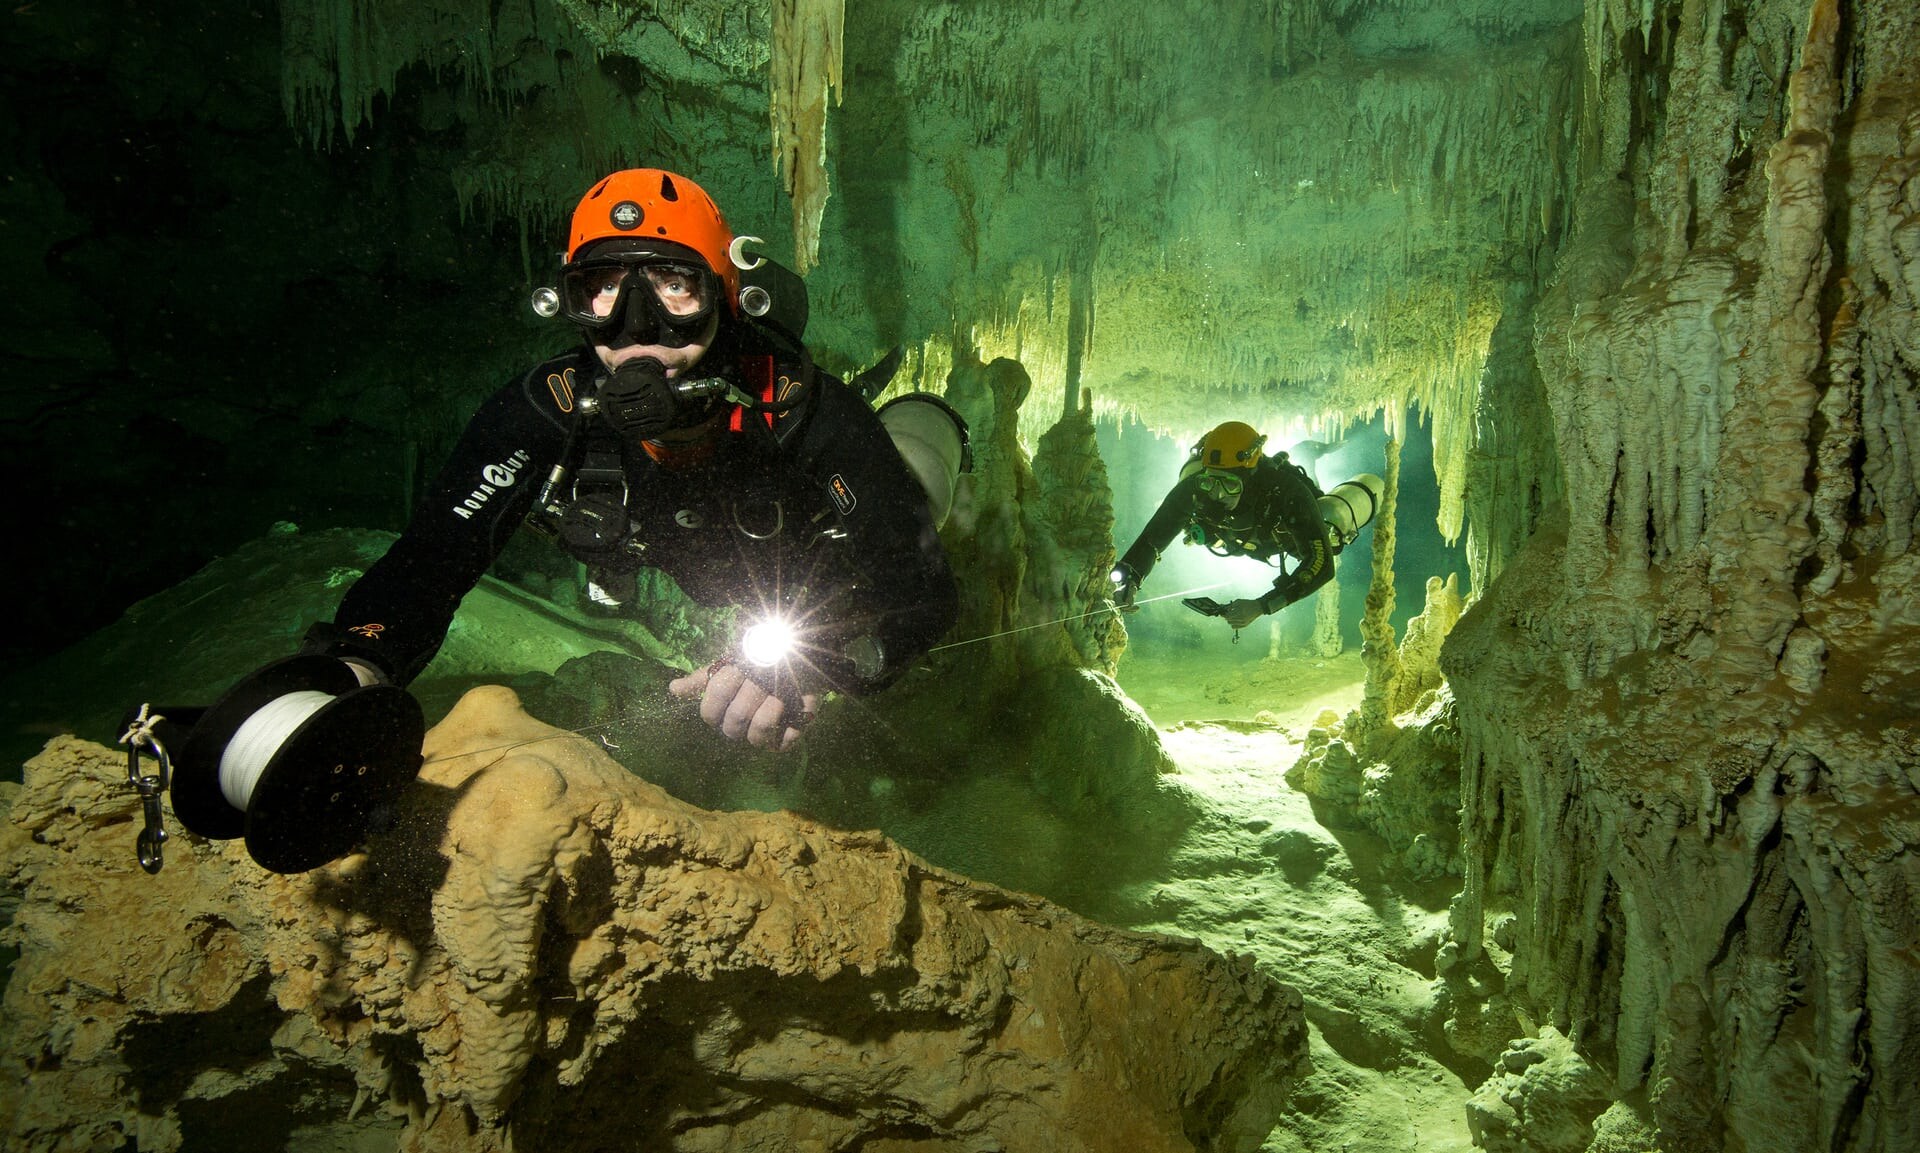 Langste onderwatergrot ter wereld ontdekt in Mexico. Vondst kan nieuw licht werpen op mysterie van de Maya's